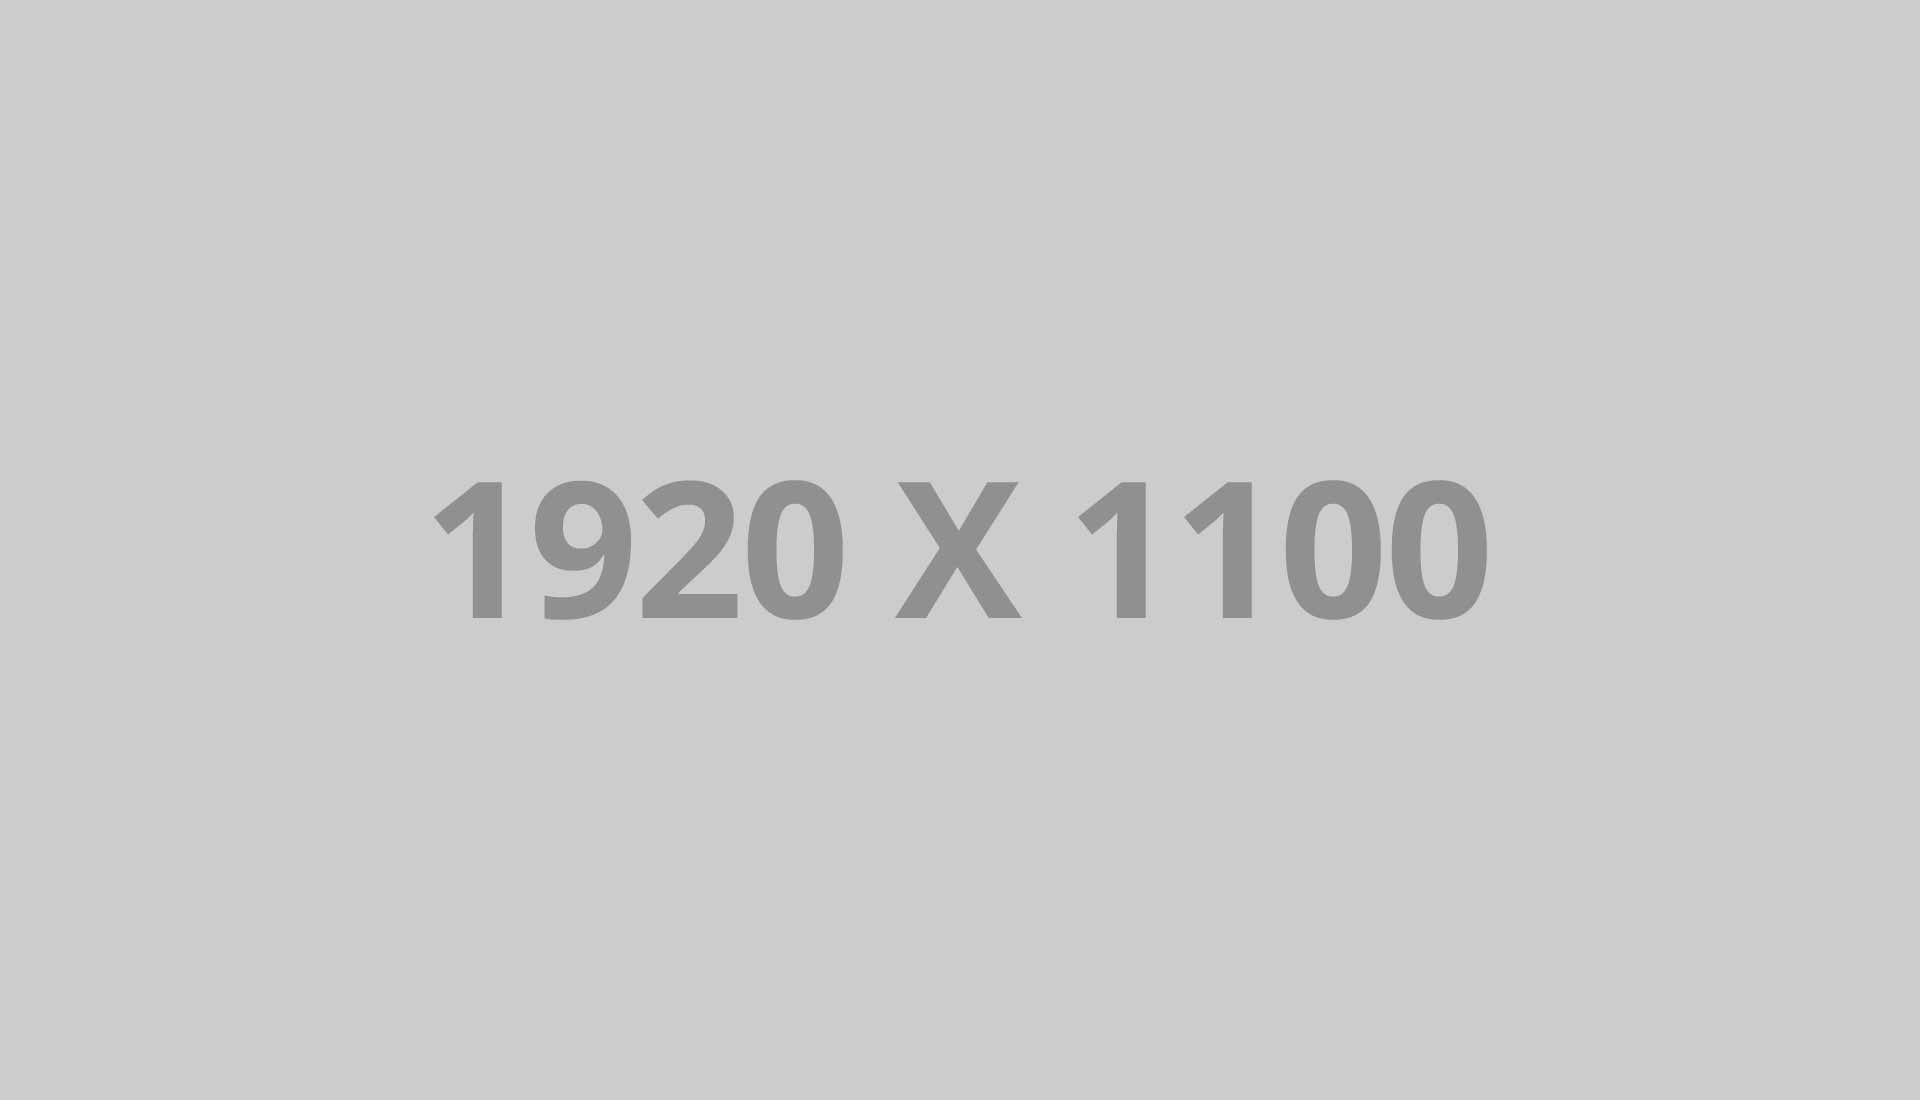 1920 x 1100 ph